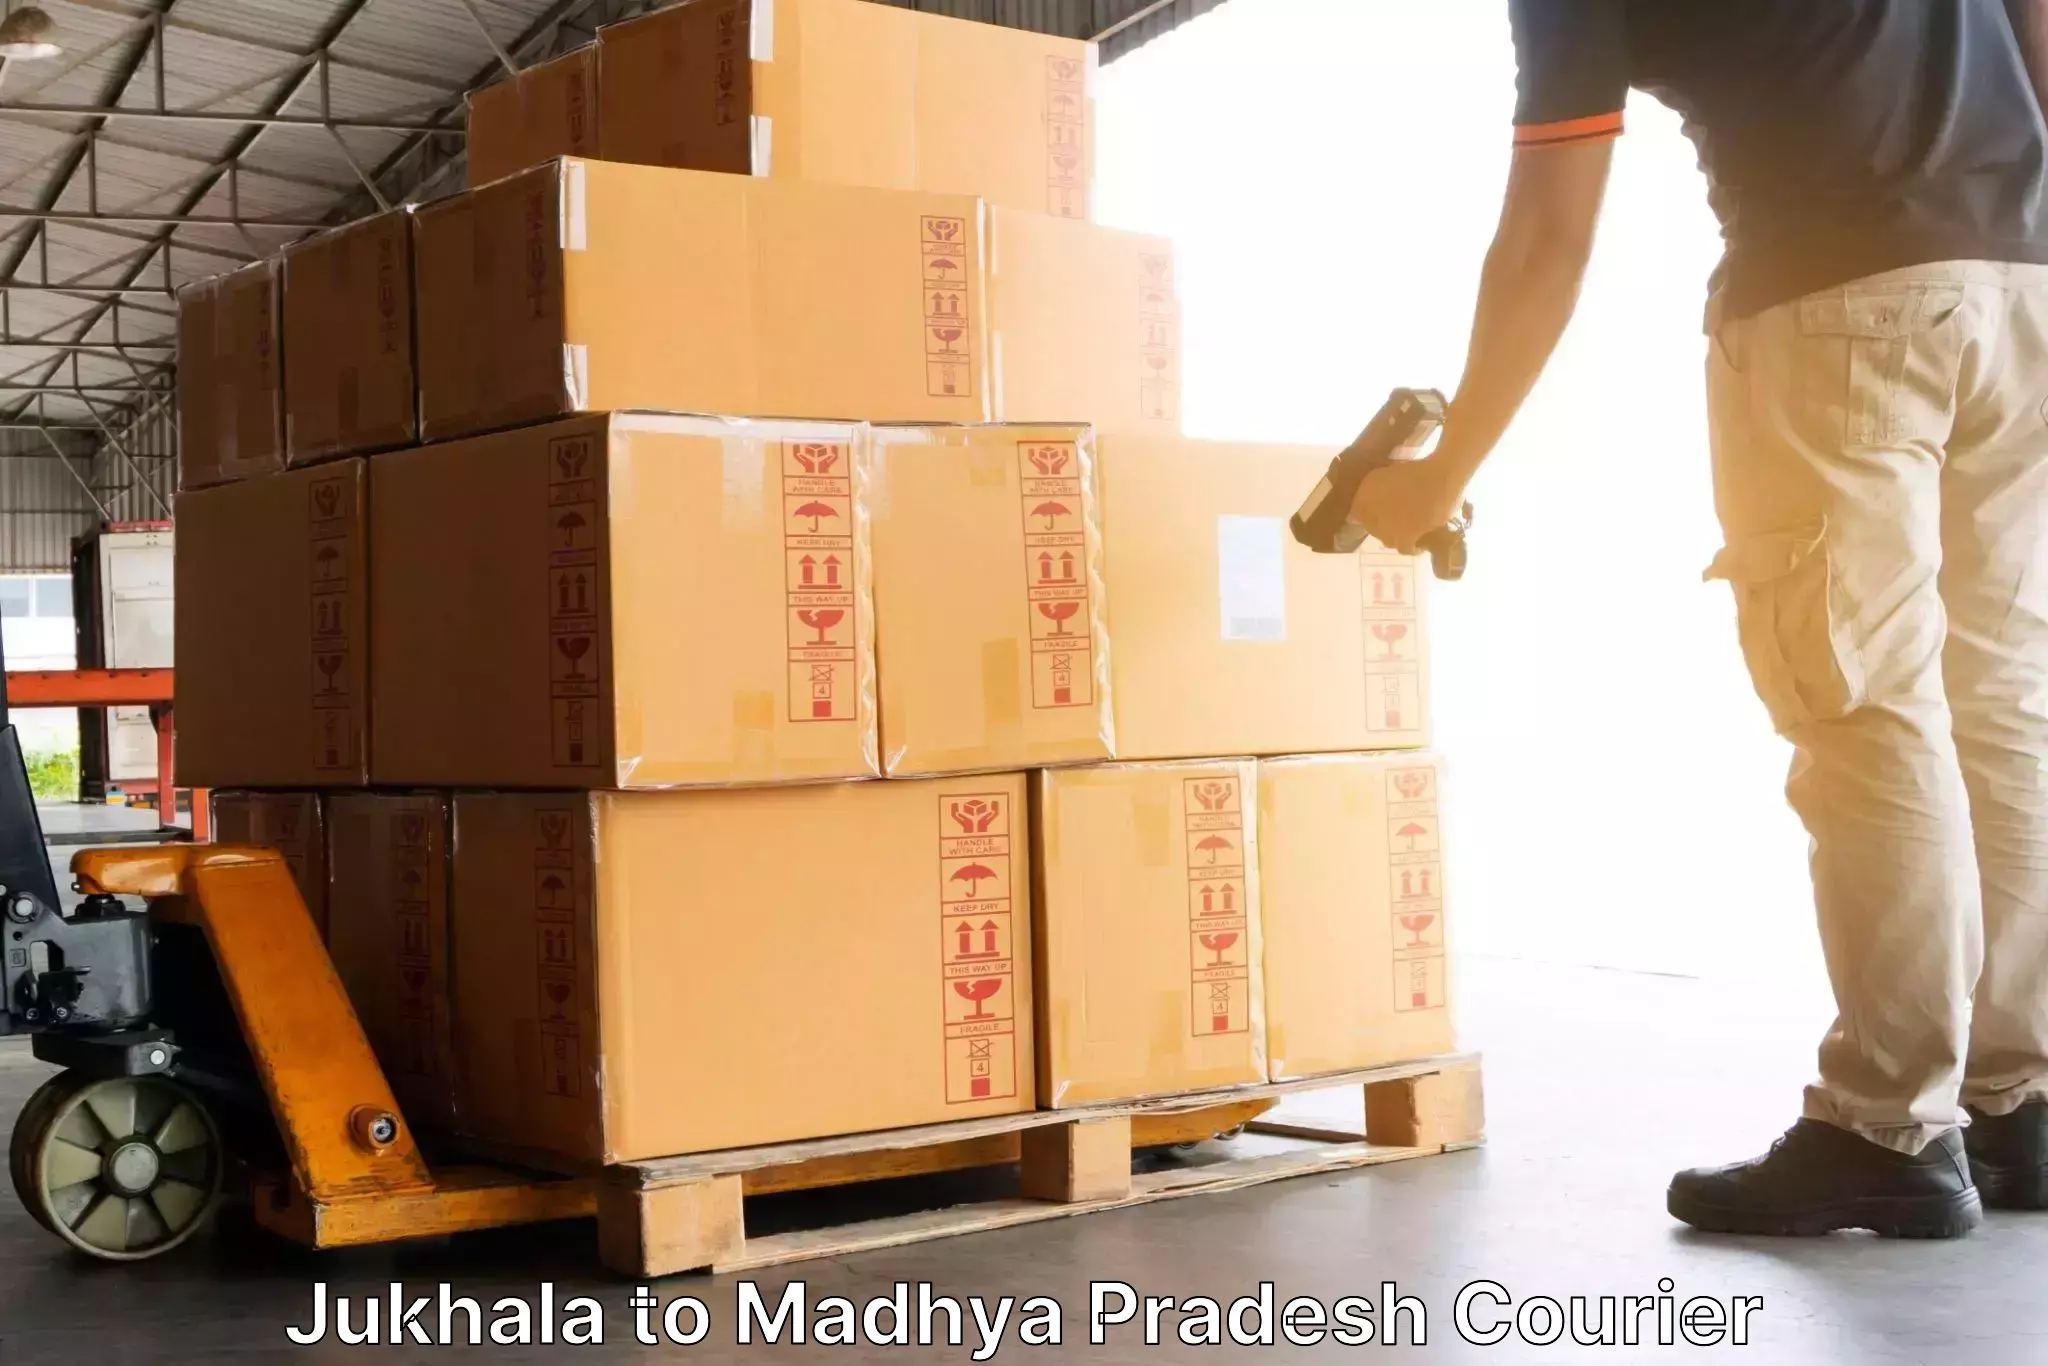 Holiday shipping services Jukhala to Madhya Pradesh